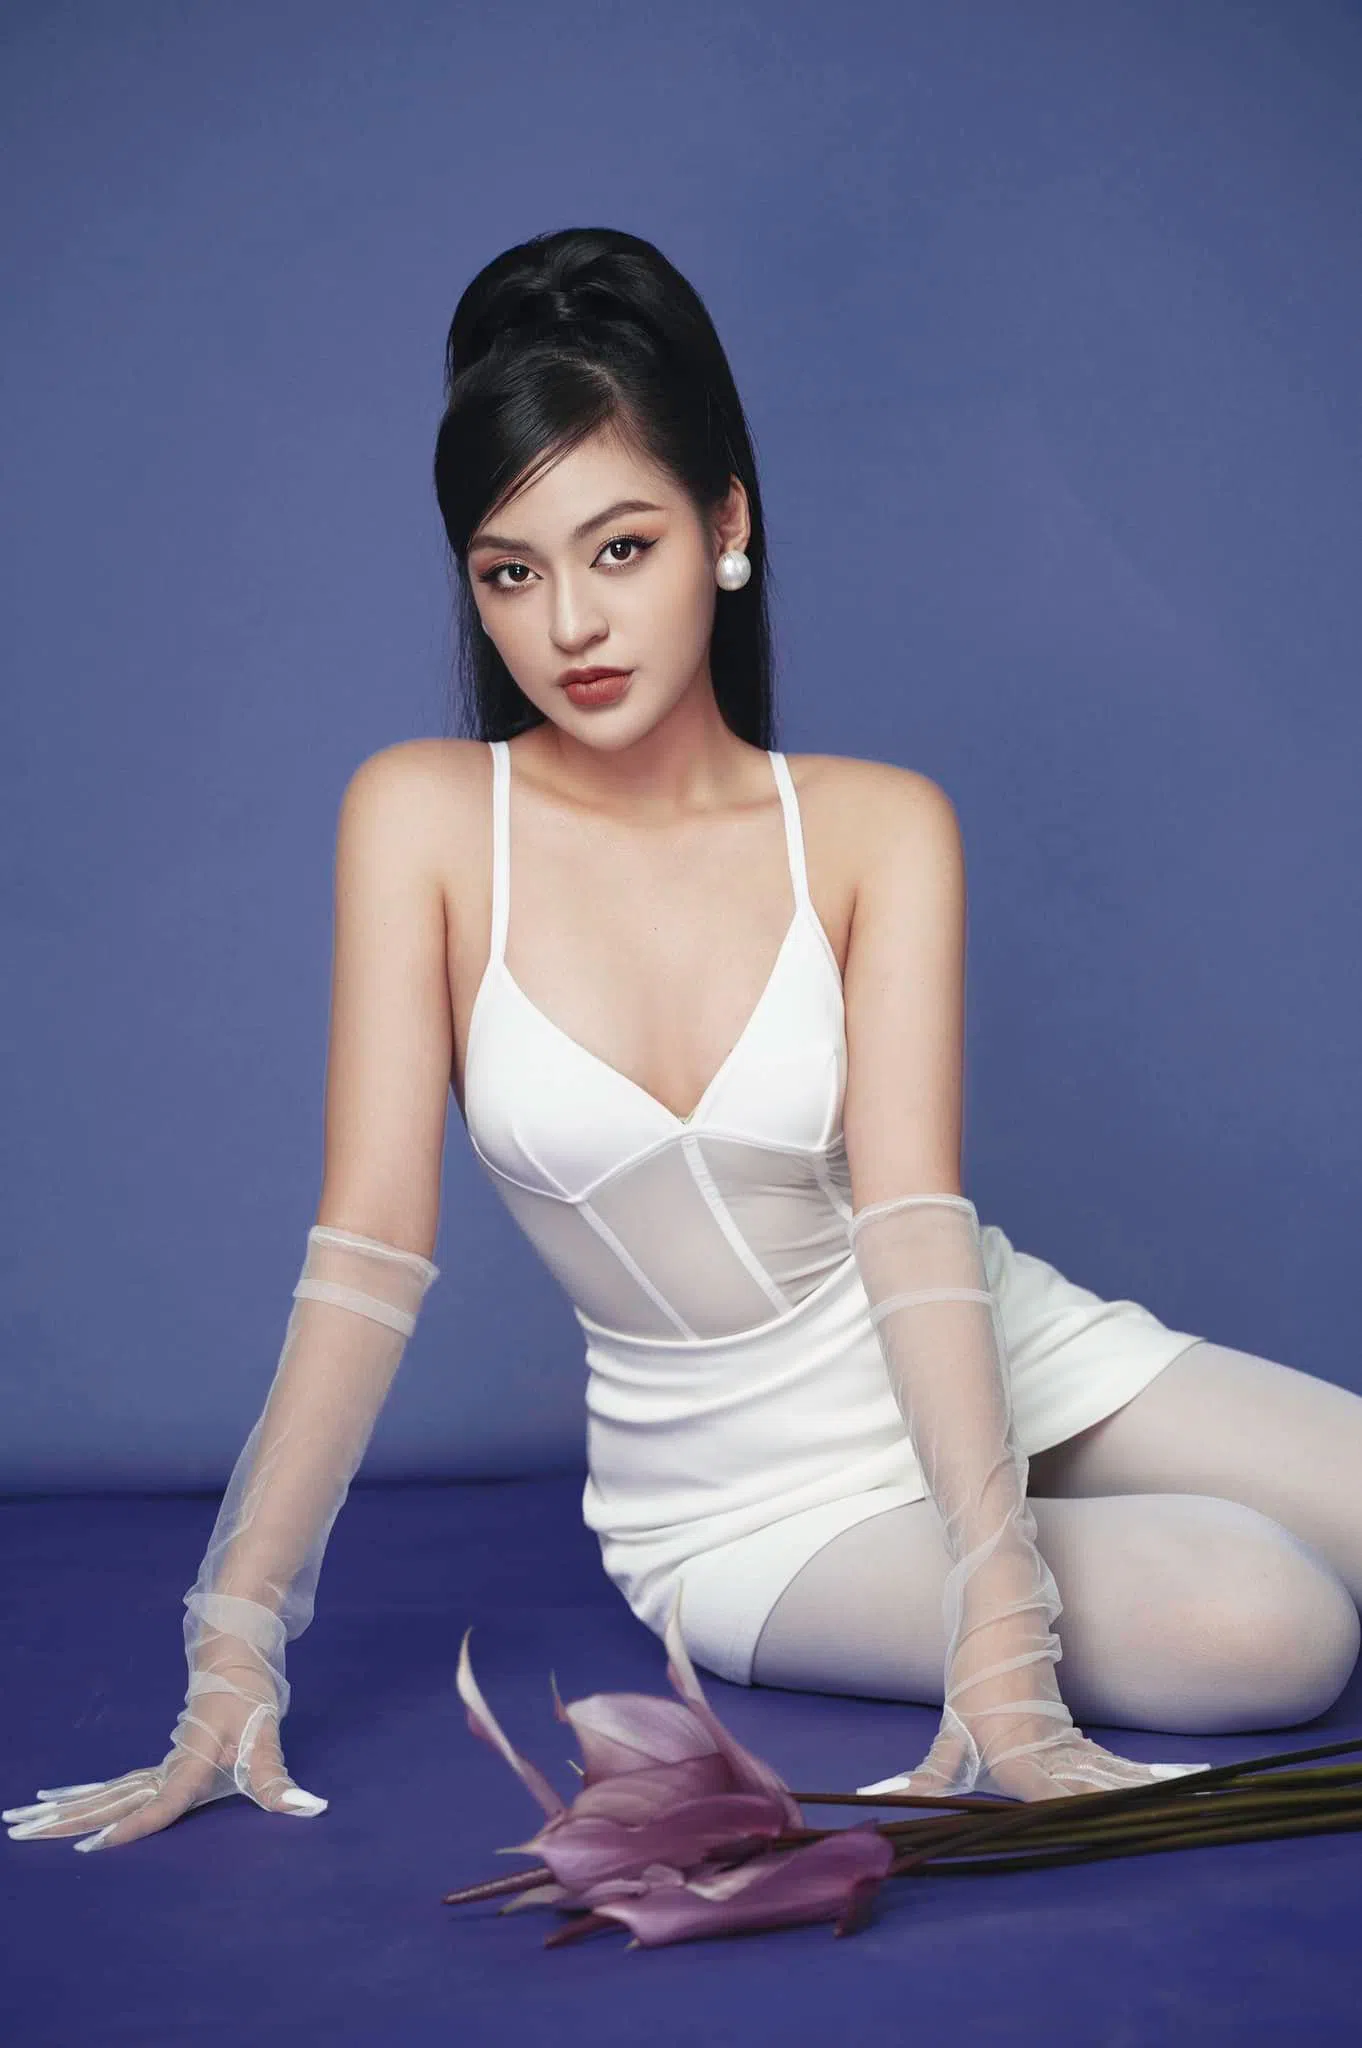 'Hot girl trứng rán' Trần Thanh Tâm là ai? Trần Thanh Tâm đi thi Miss Fabulous International 2022